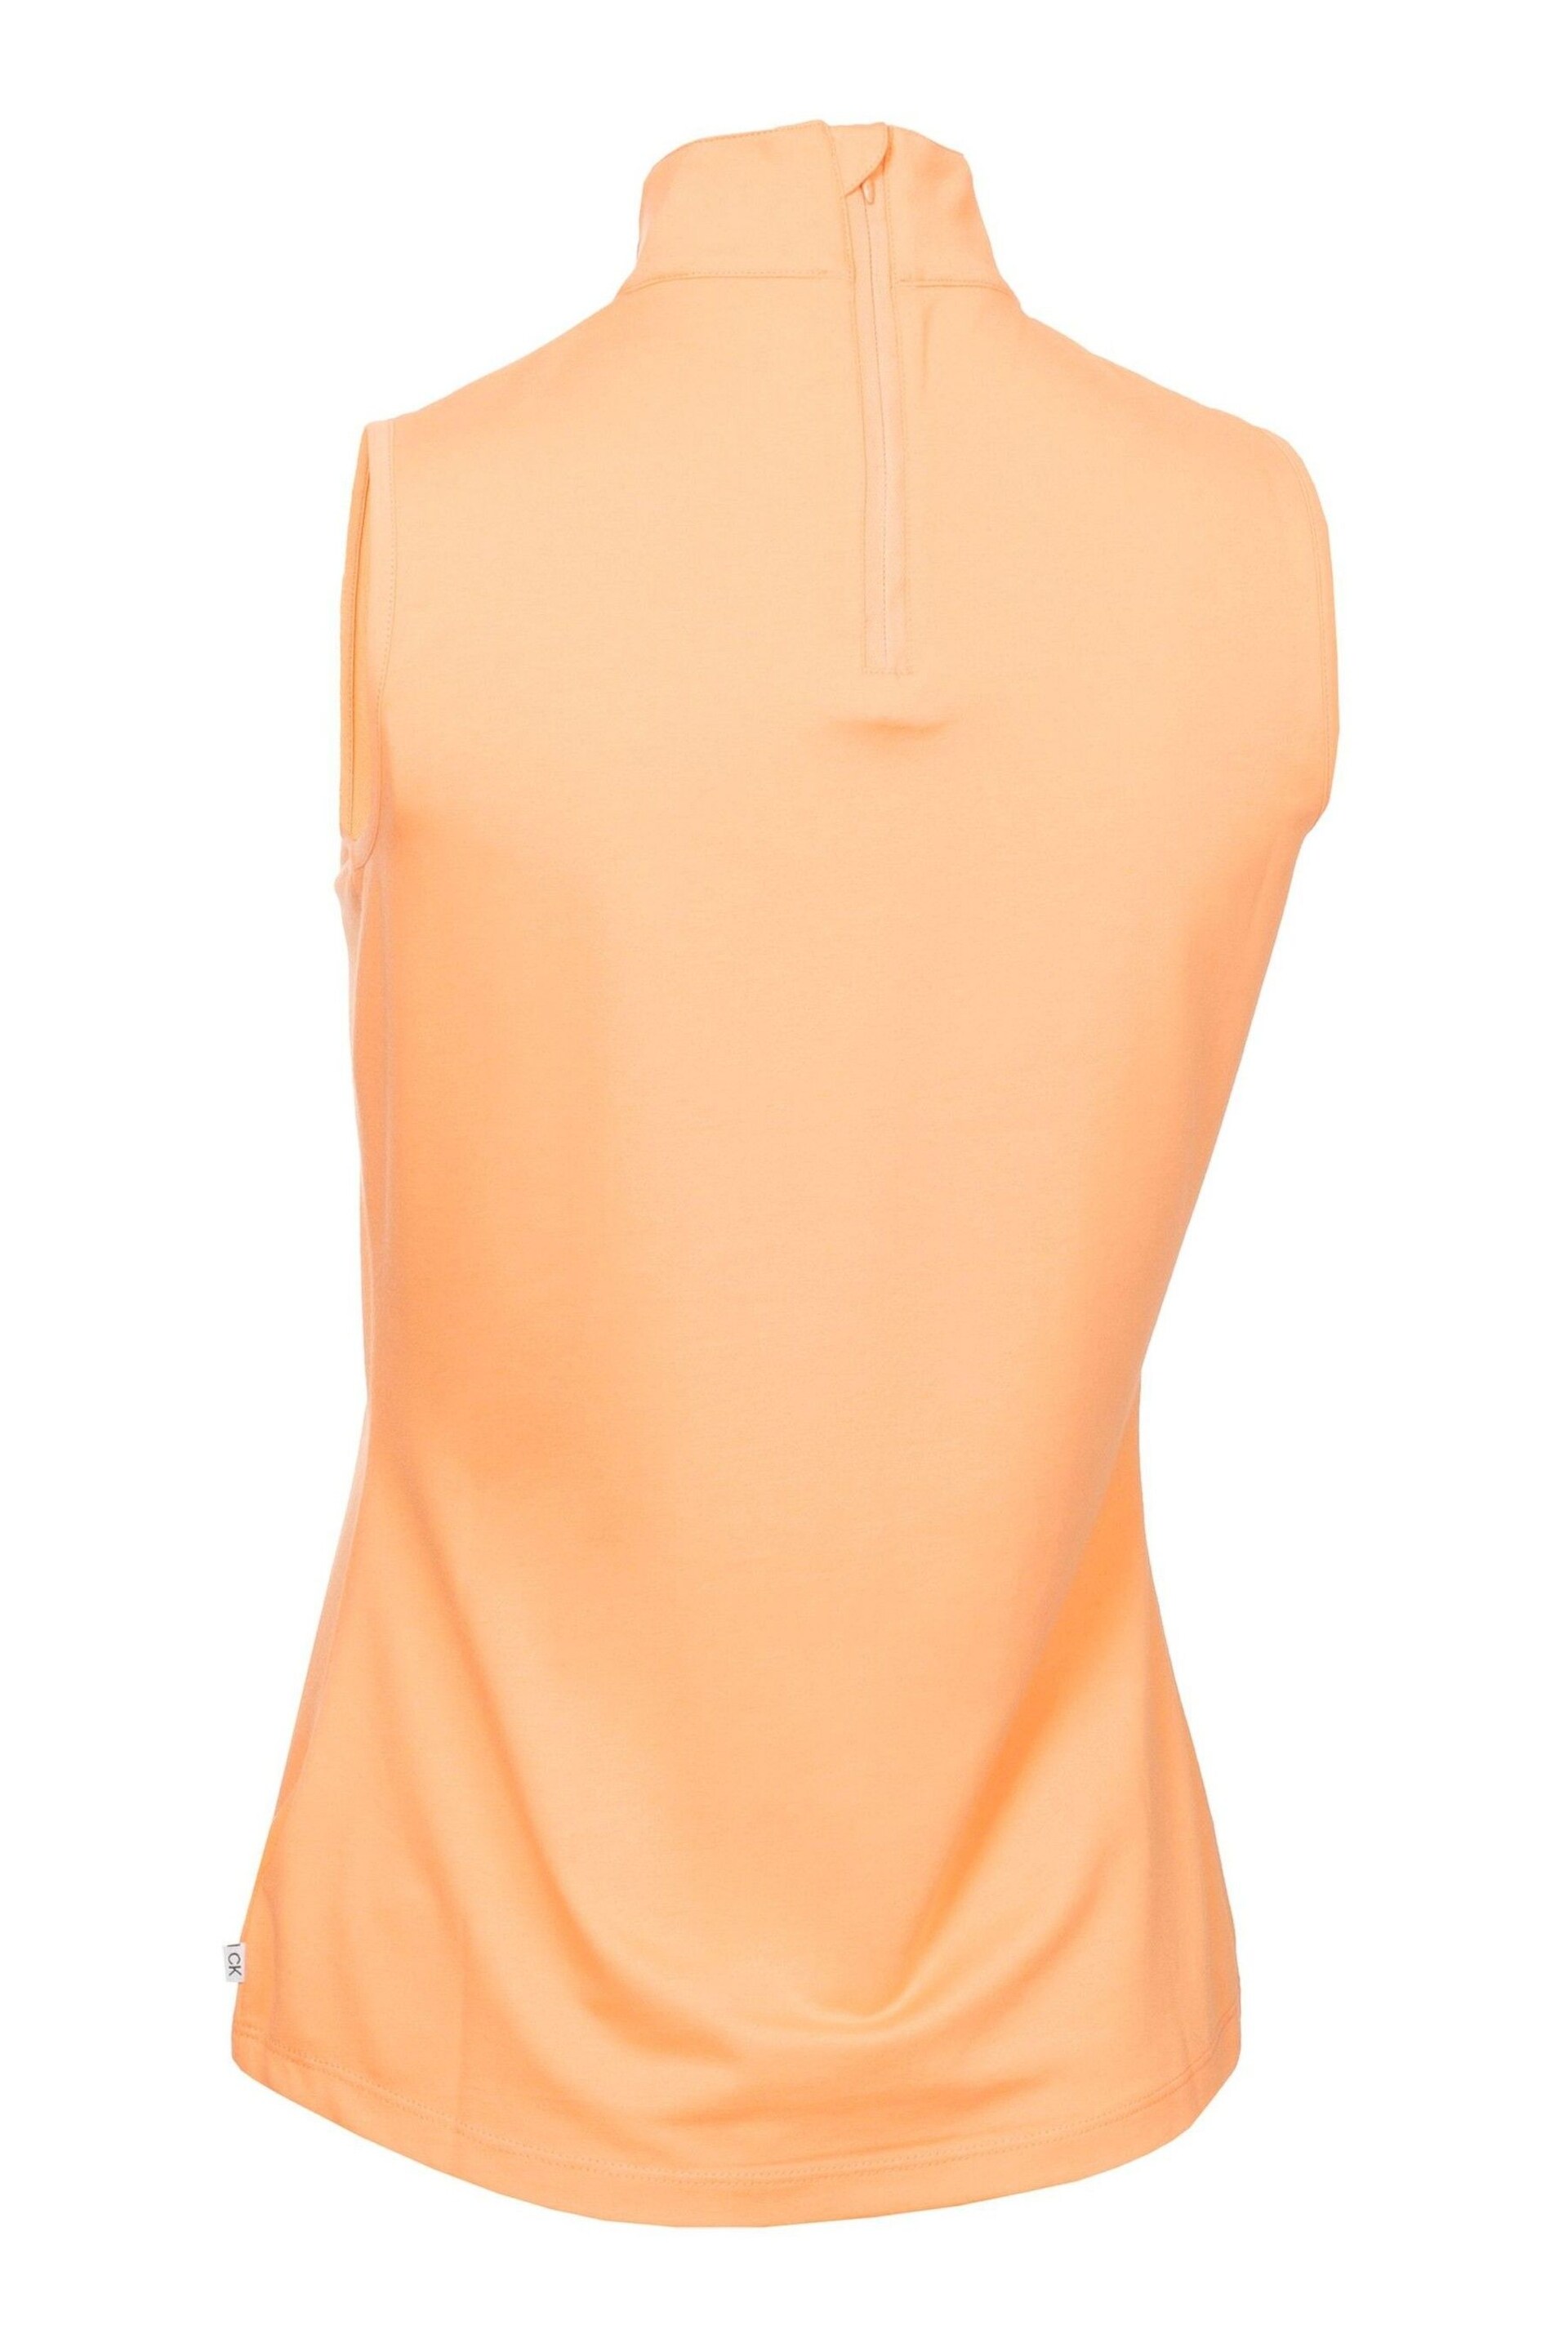 Calvin Klein Golf Orange Skyway Polo Shirt - Image 6 of 8